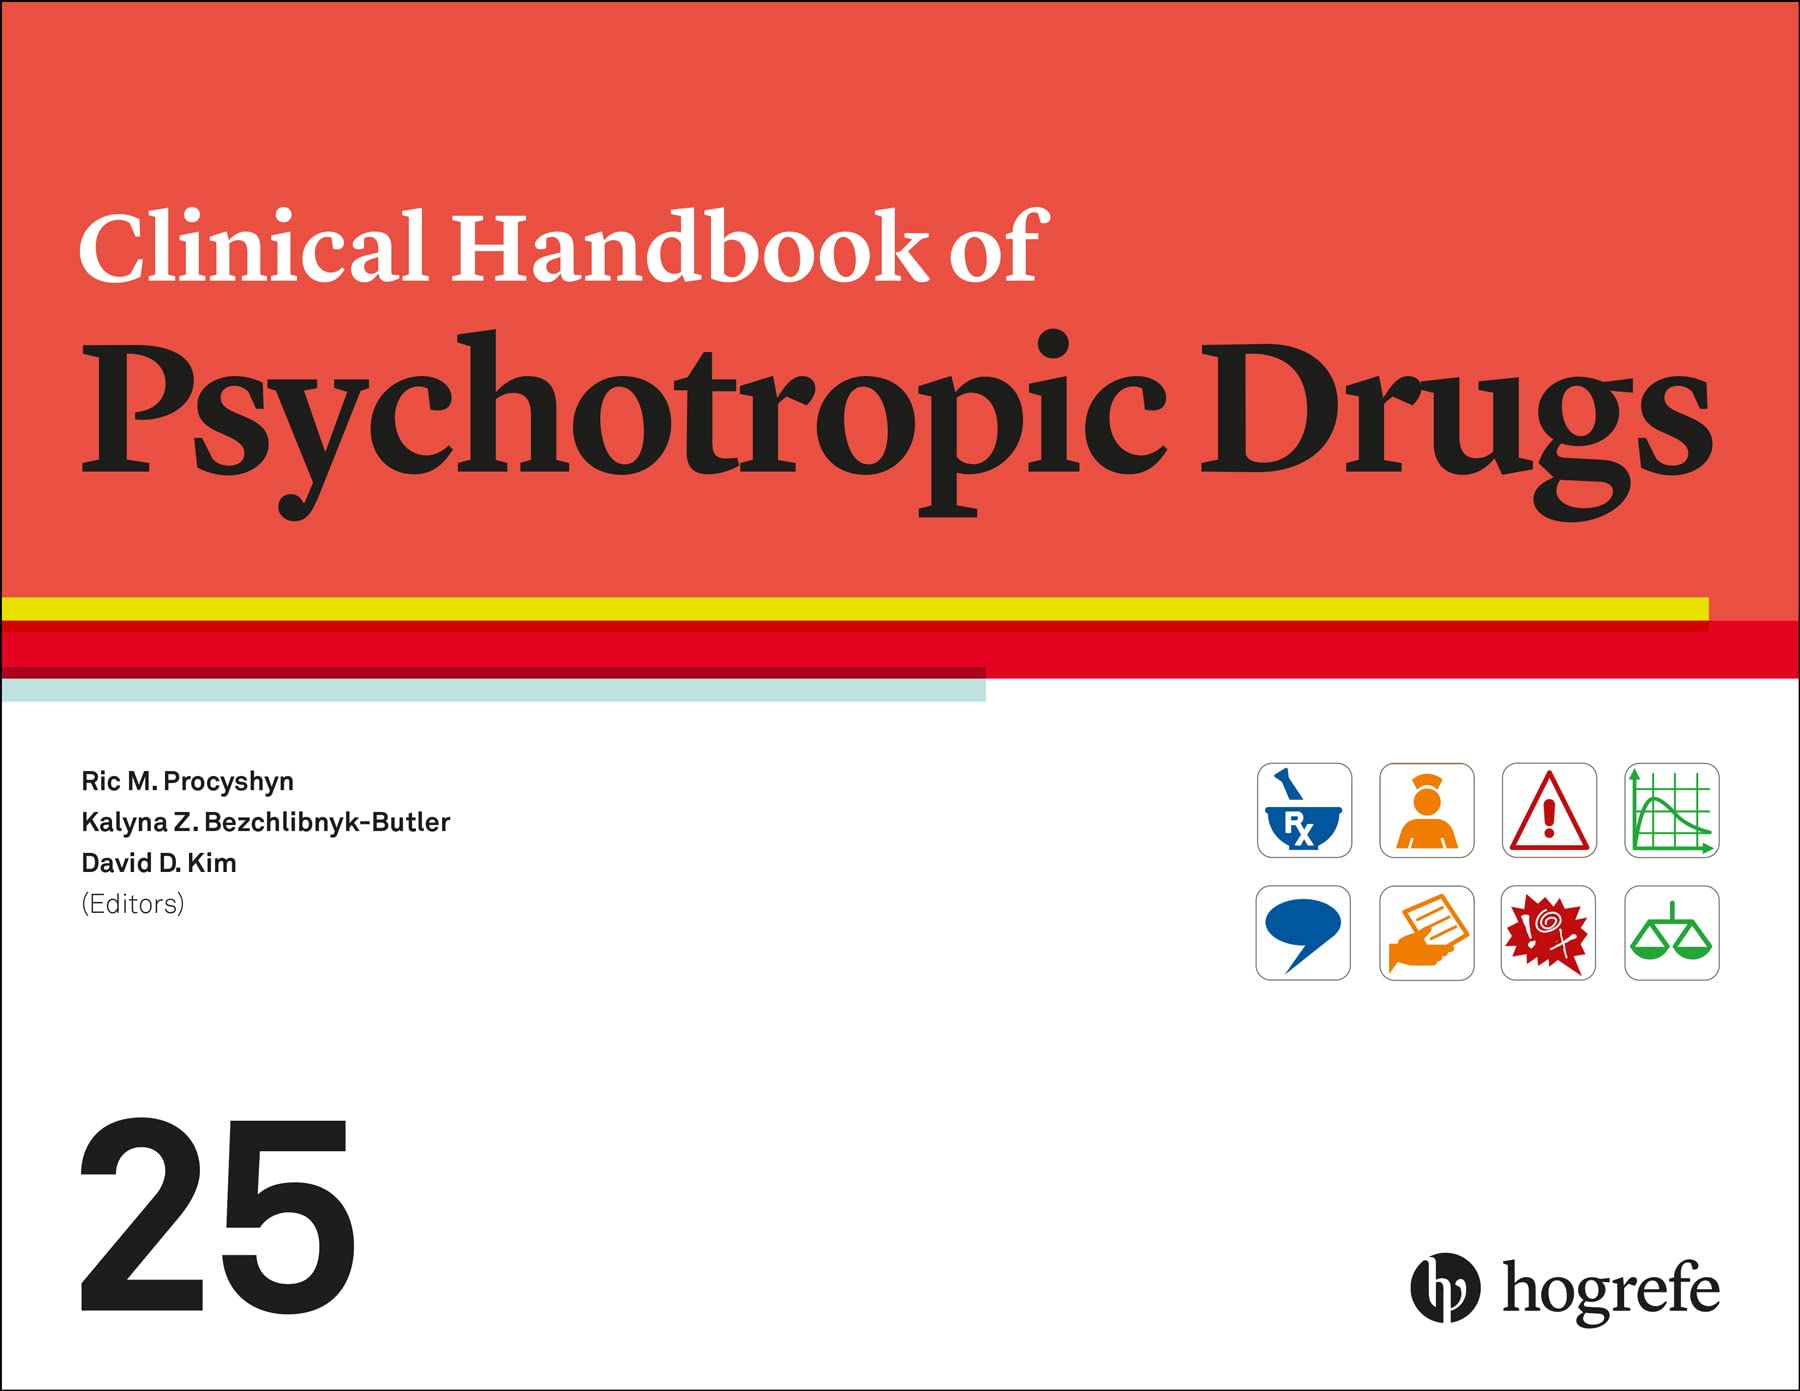 Clinical Handbook of Psychotropic Drugs, 25th Edition by Ric M. Procyshyn 